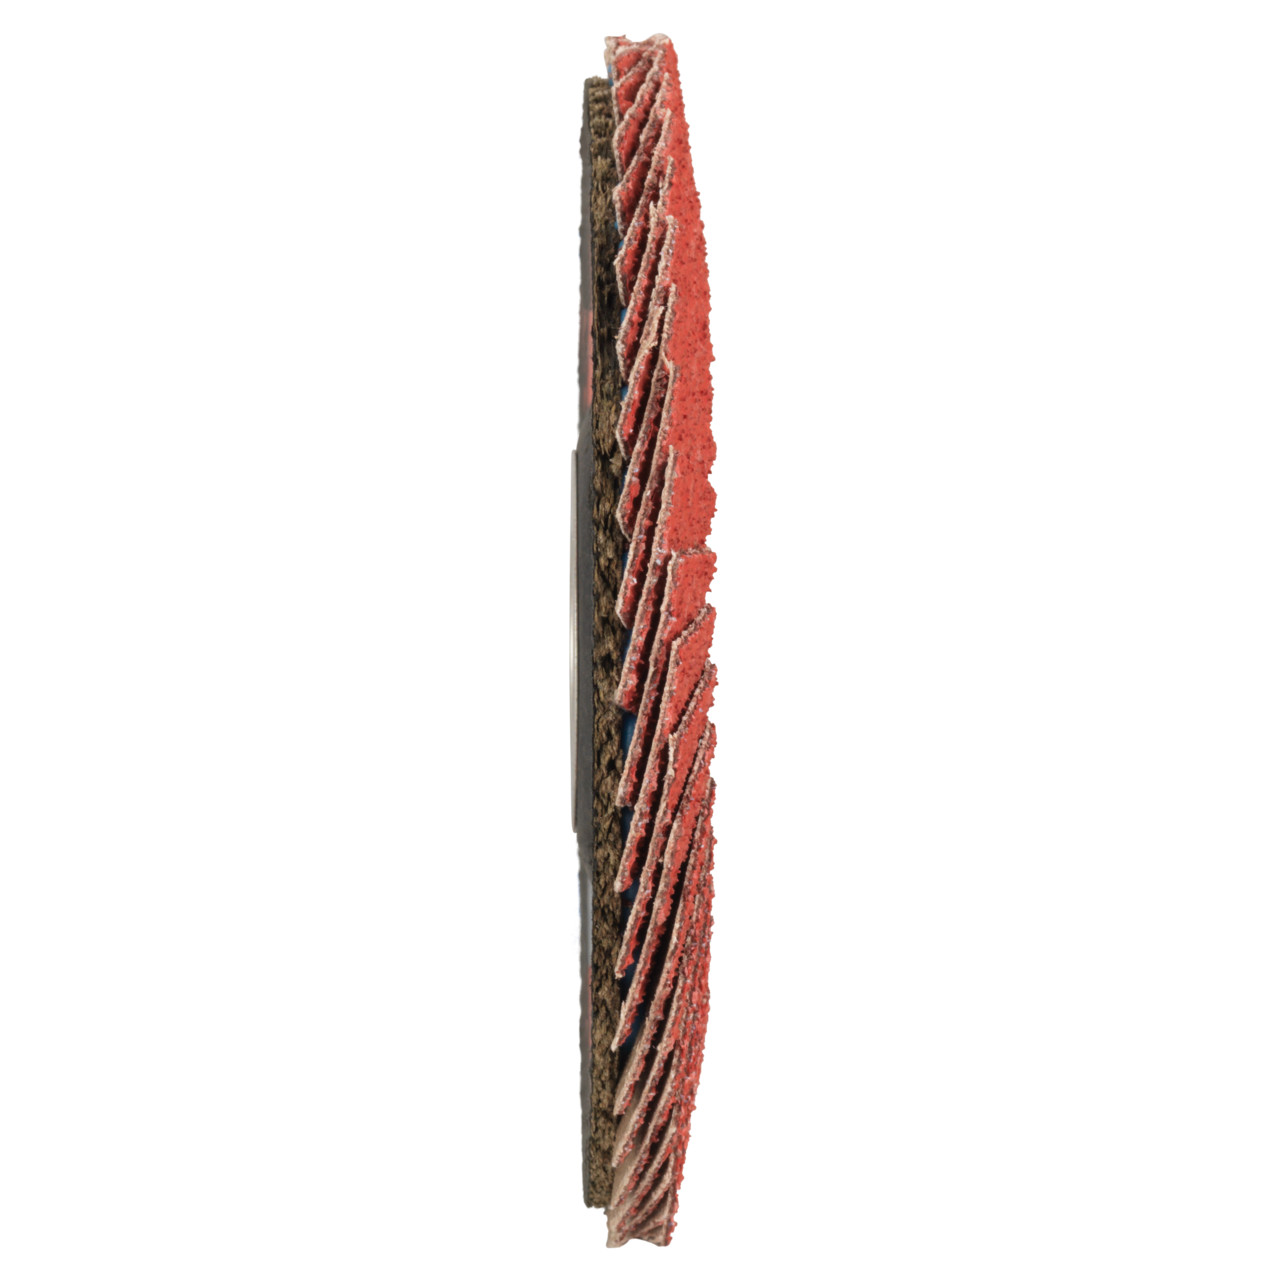 Tyrolit Rondelle éventail DxH 125x22,23 CERAMIC pour acier inoxydable, P60, forme : 28A - modèle droit (modèle à corps en fibre de verre), art. 719800